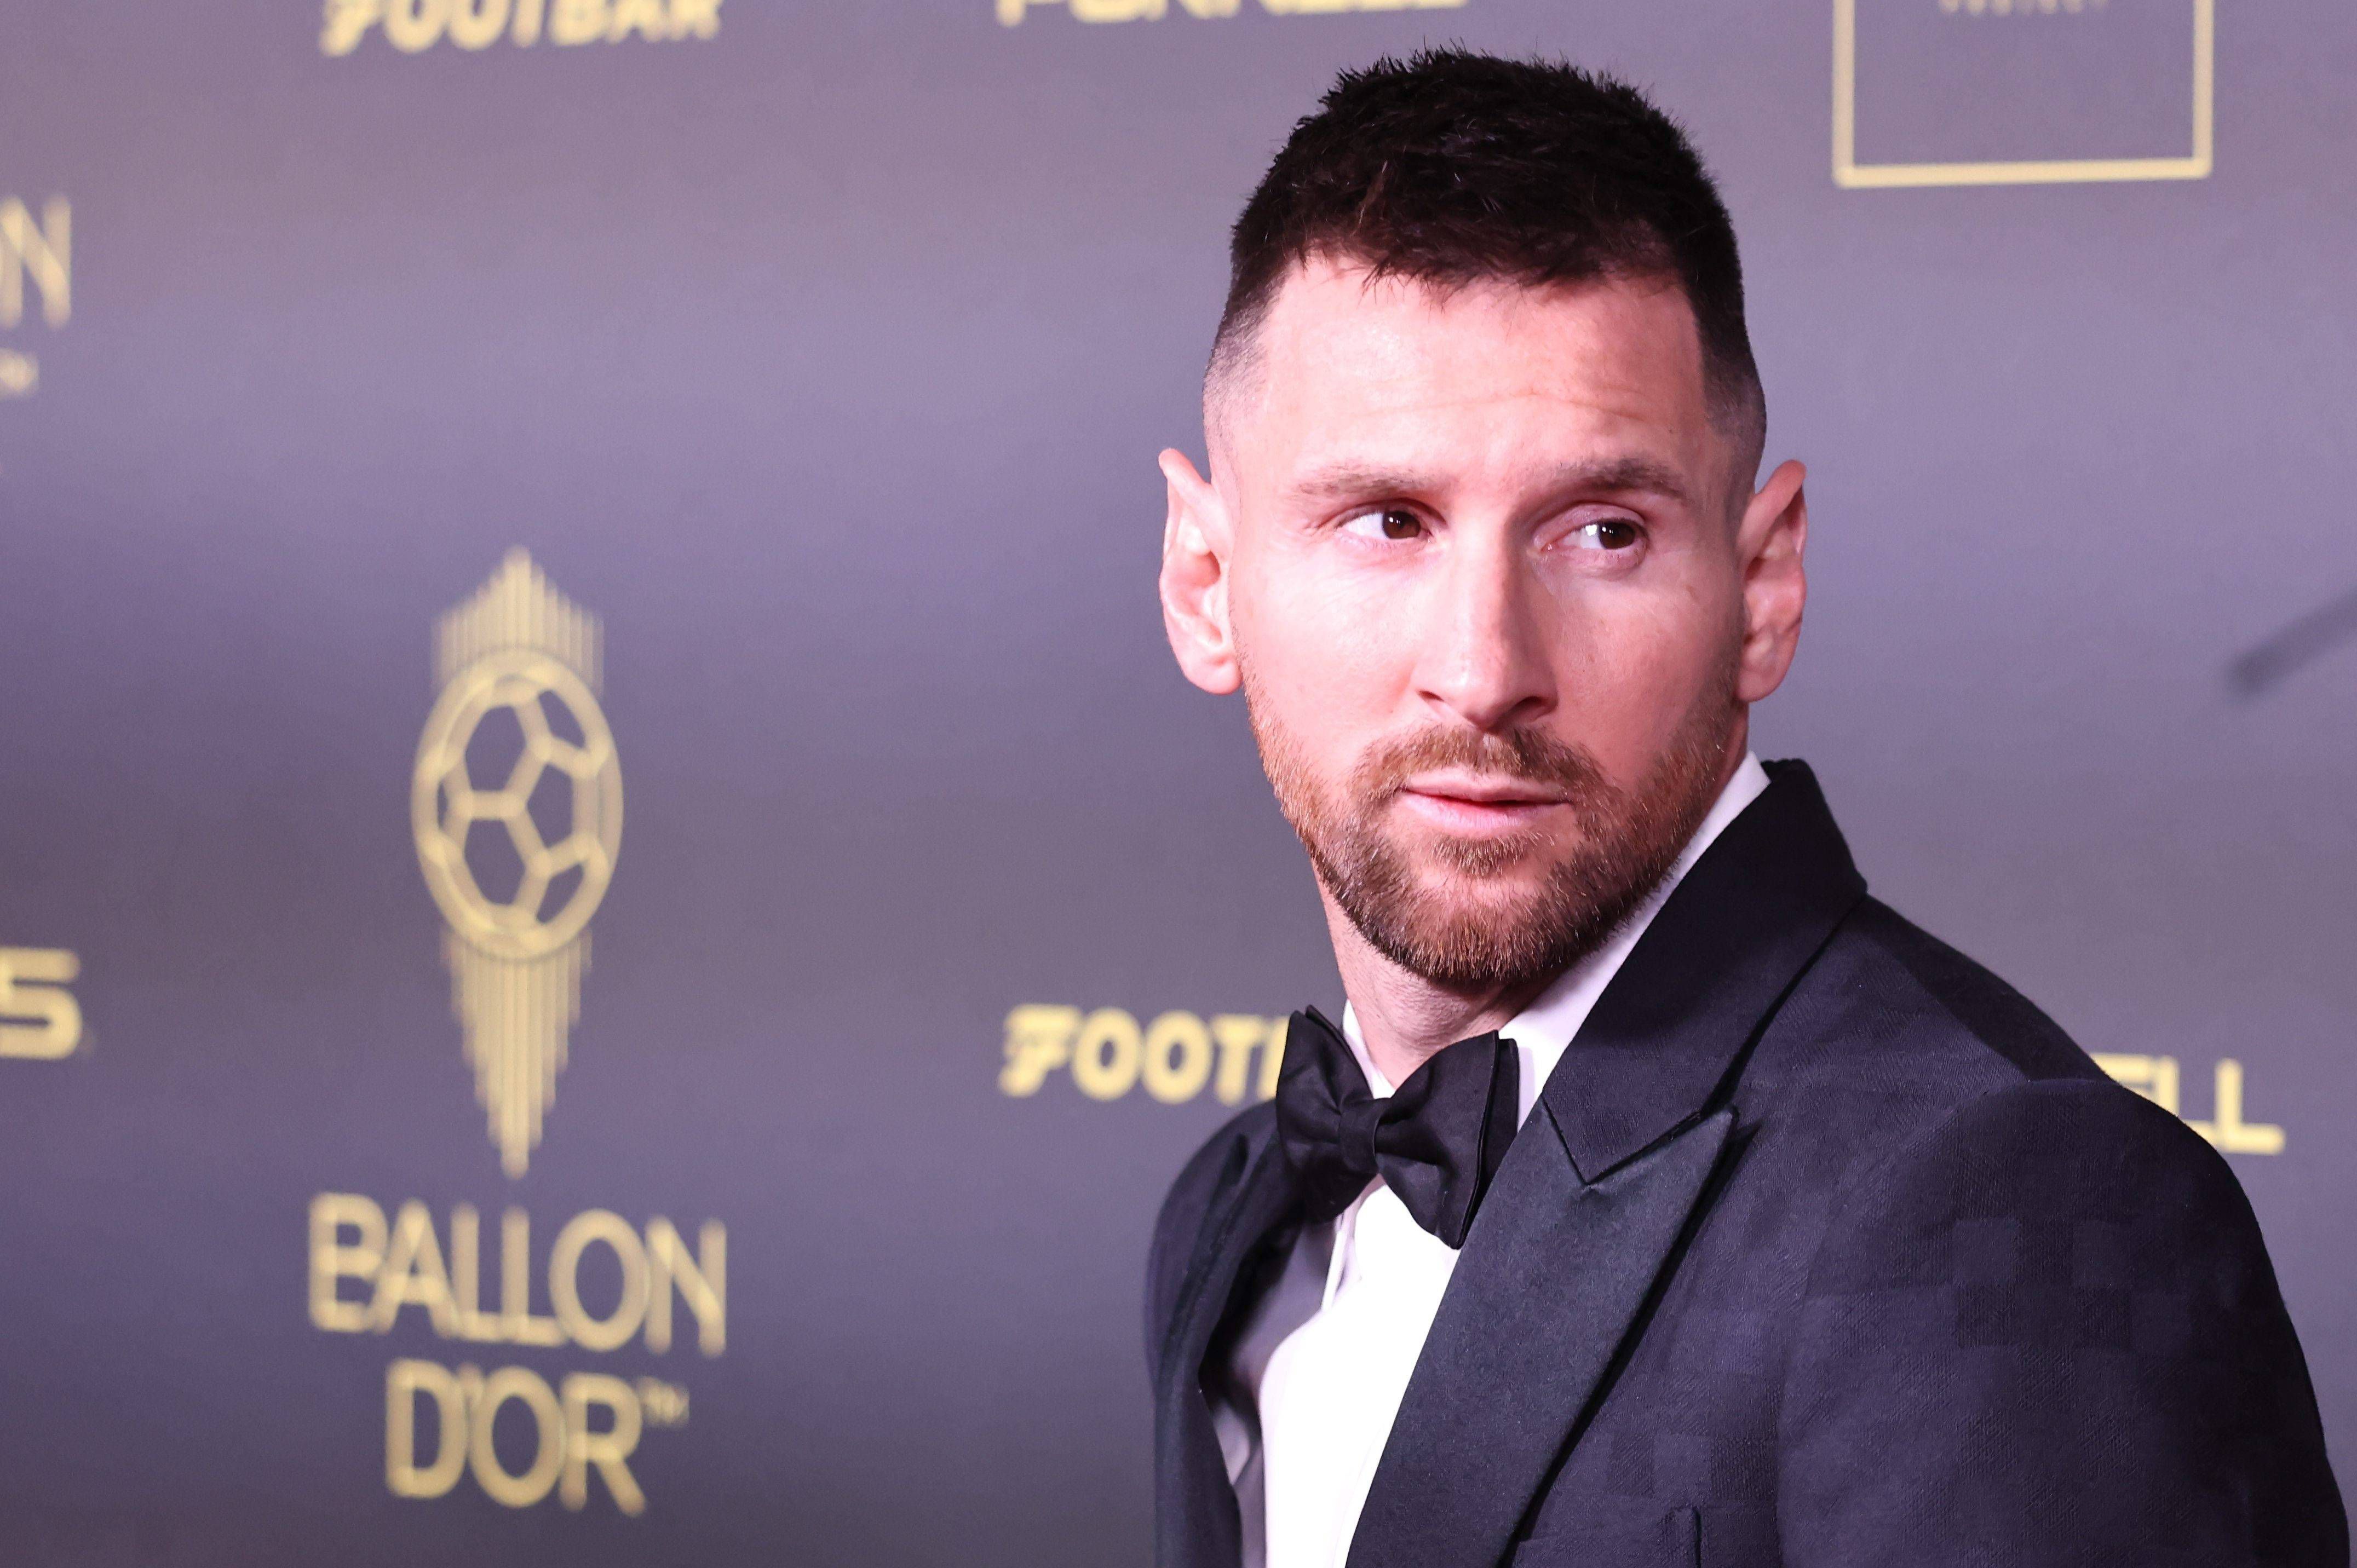 Jornalista espanhol vê “fraude” em Bola de Ouro pra Messi em 2021